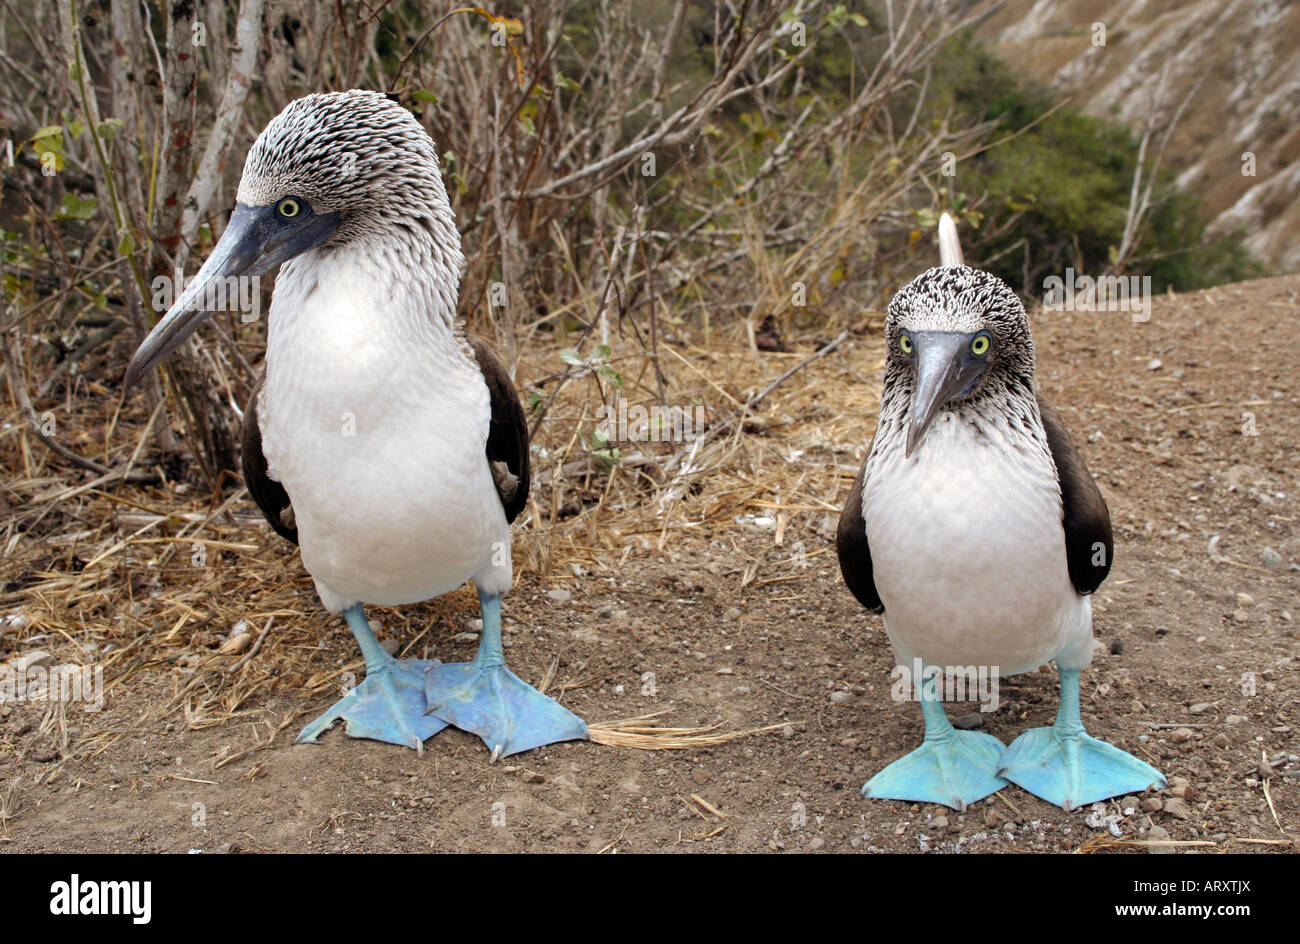 Blue Footed Booby oiseaux Parc National des Galapagos Équateur Amérique du Sud de l'Océan Pacifique Banque D'Images